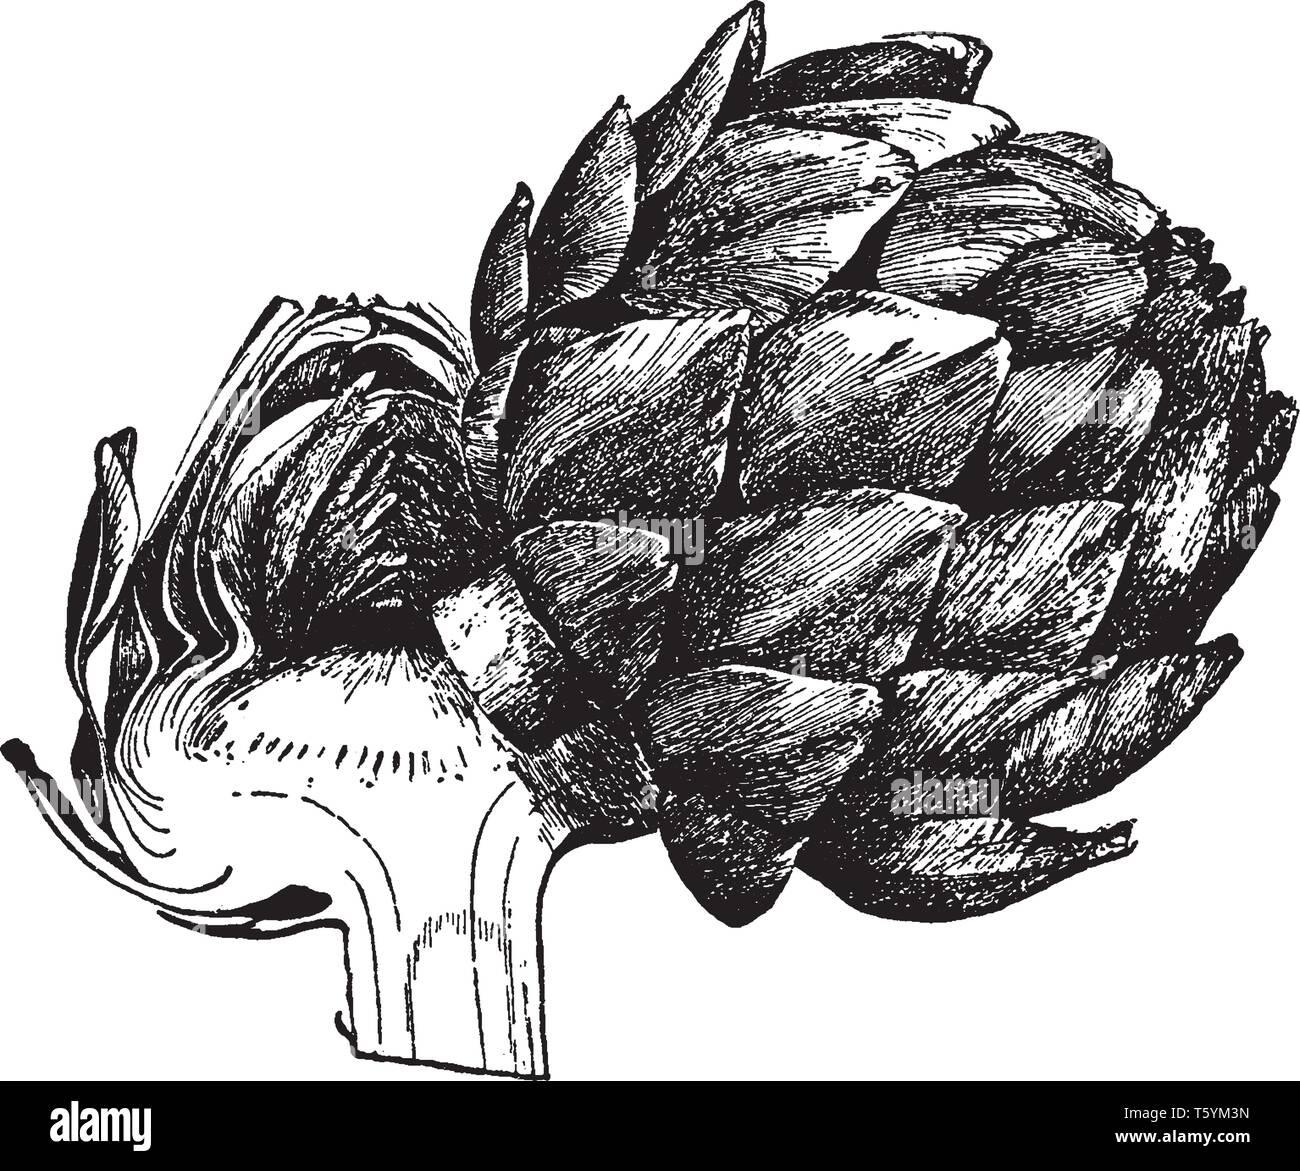 C'est chef de l'usine d'artichaut. Les fleurs se développent dans une large tête à partir d'un bourgeon comestible à propos de 8-15 cm de diamètre avec de nombreuses écailles triangulaires, vintag Illustration de Vecteur